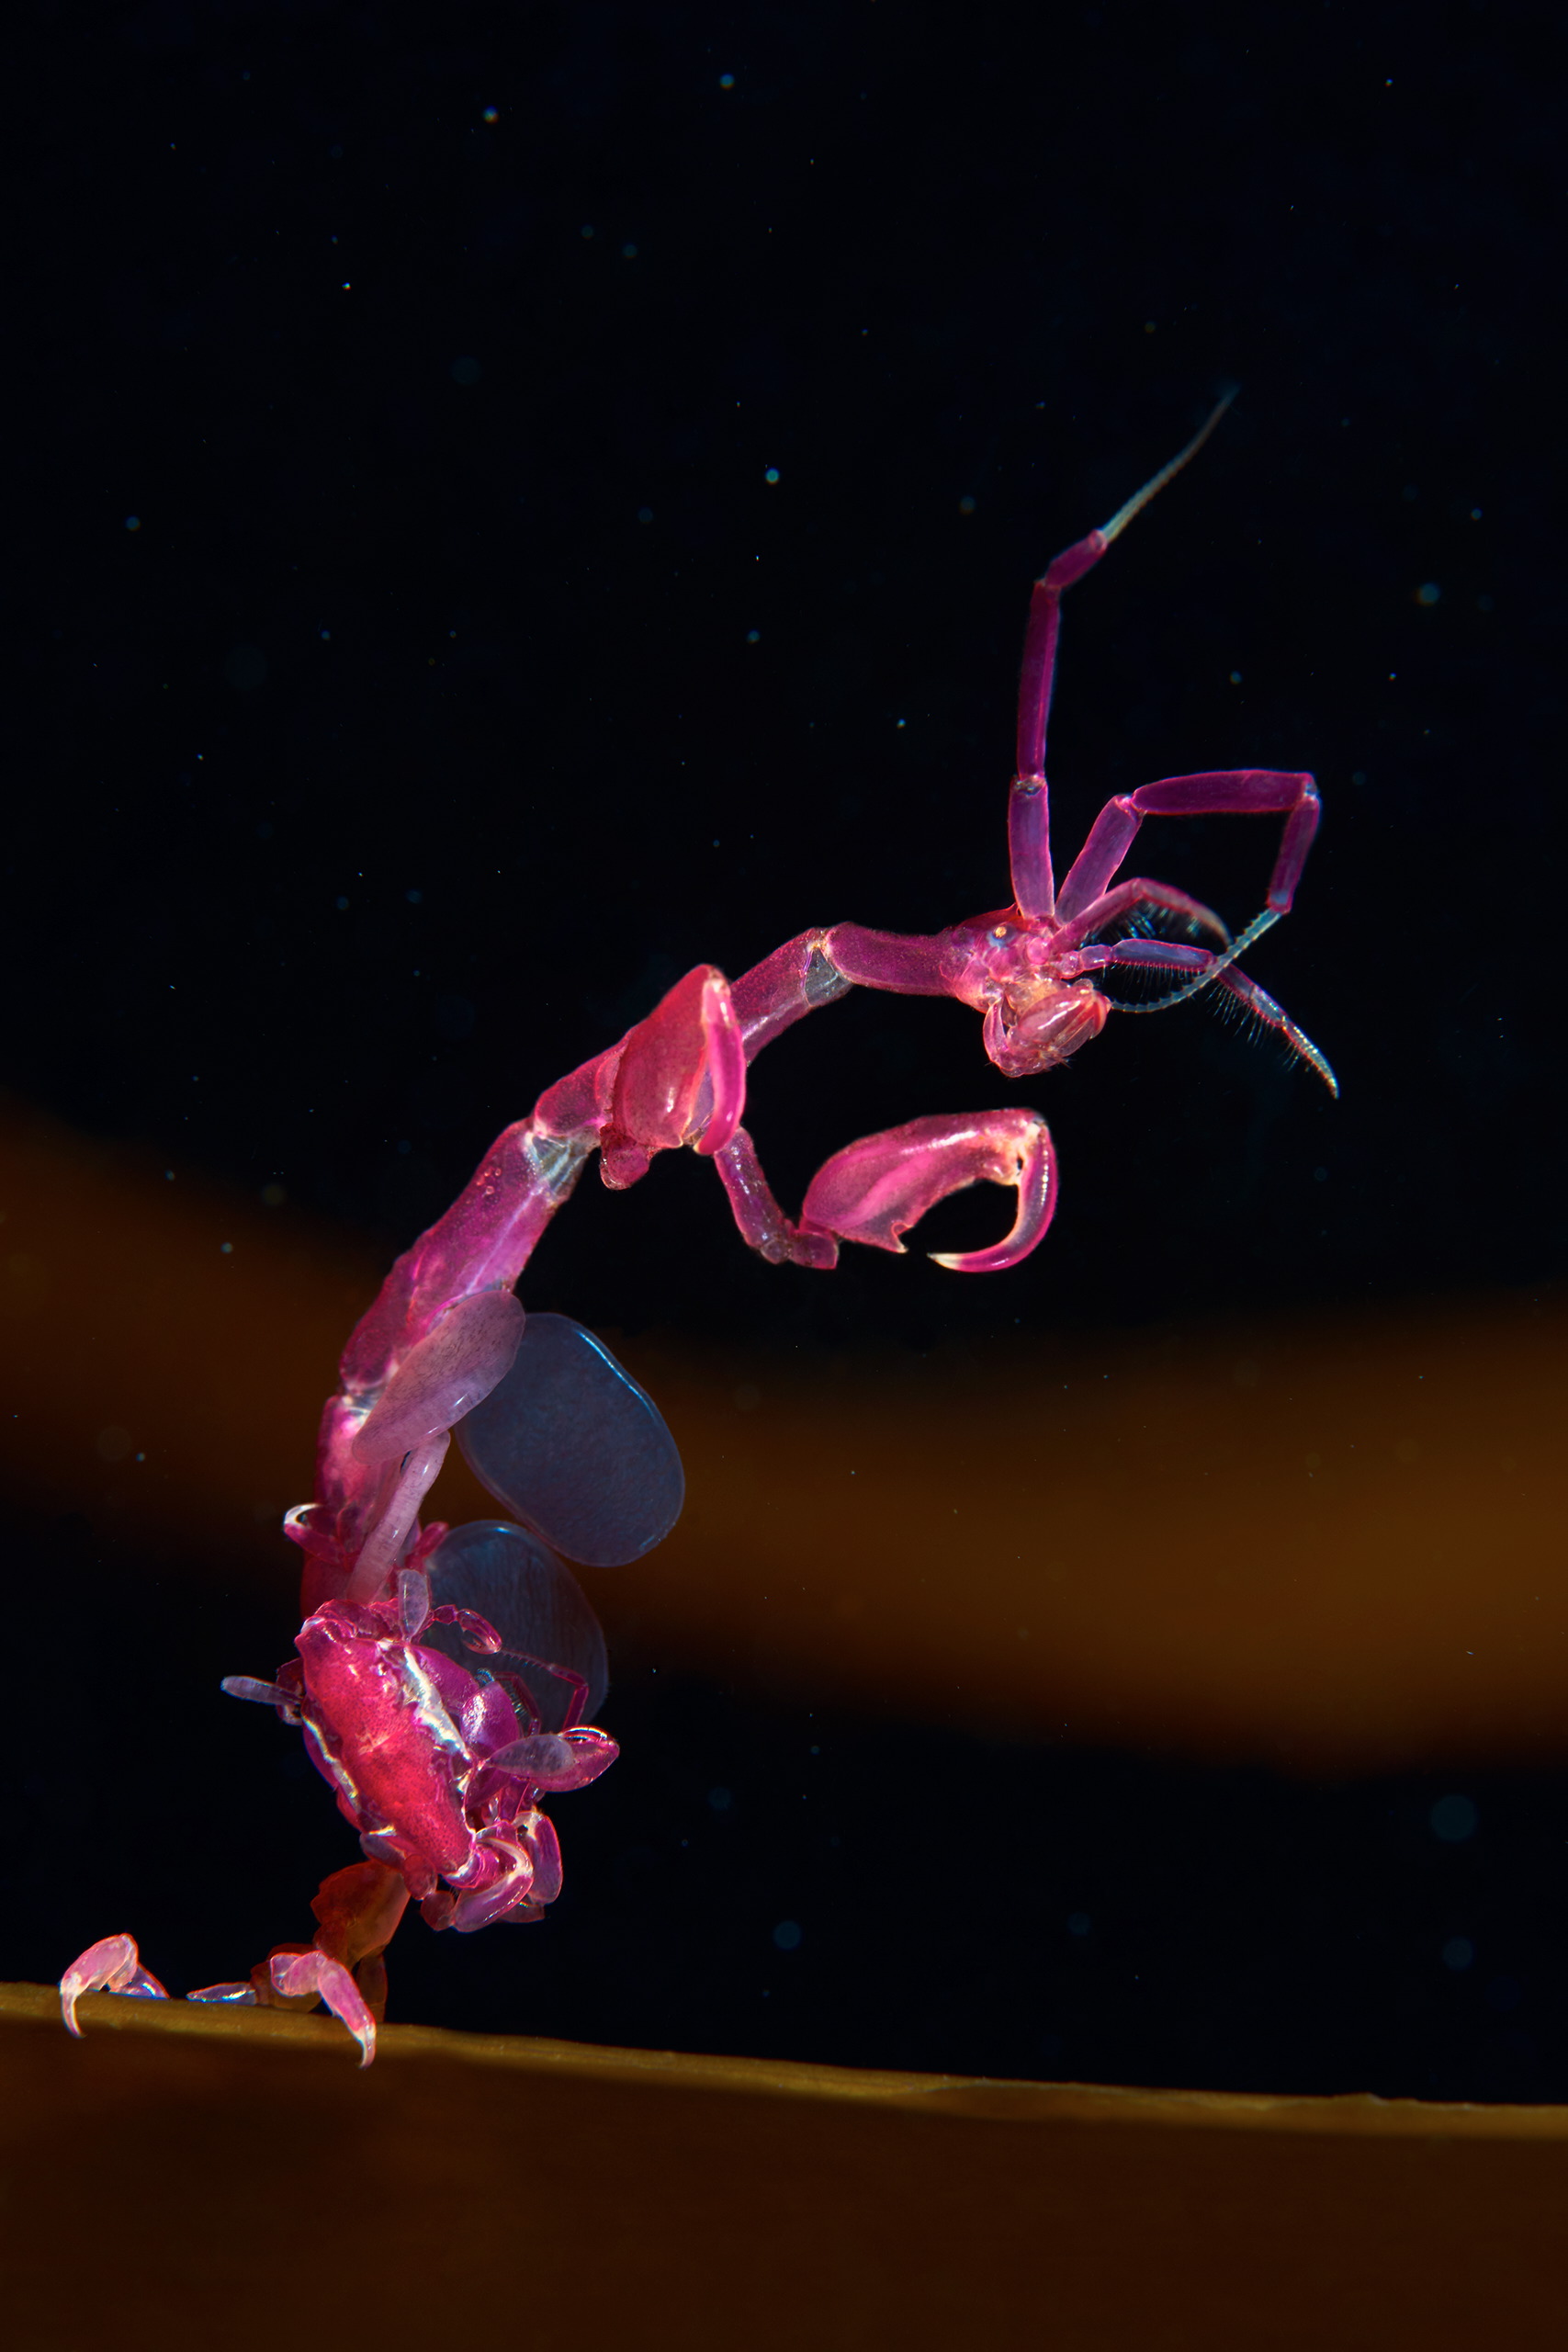 Skeleton shrimp – Caprella septentrionalis